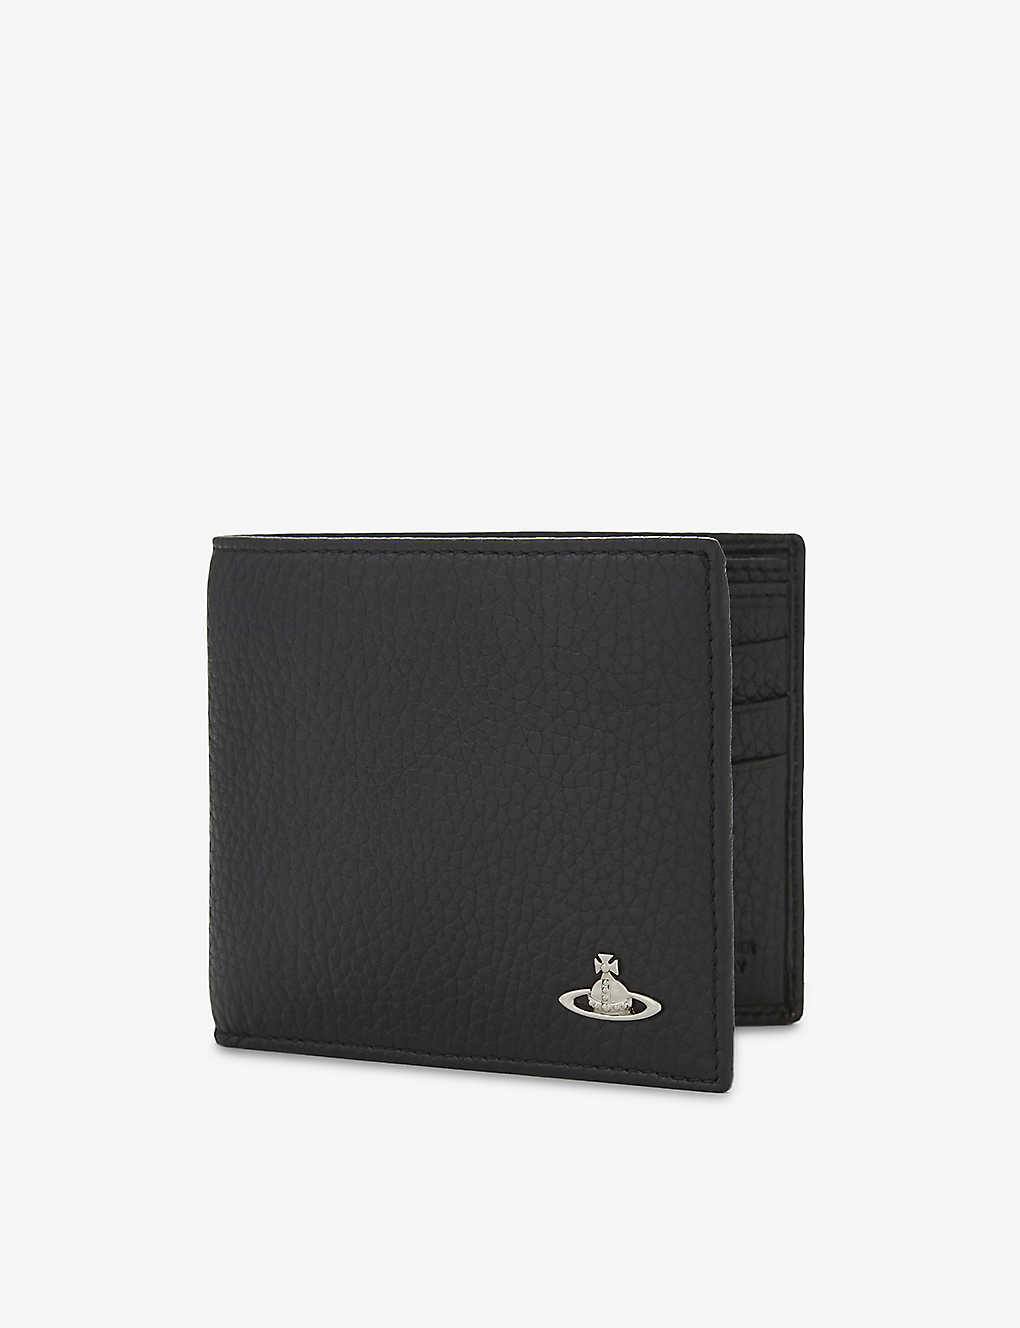 Mens Wallets and cardholders Vivienne Westwood Wallets and cardholders Vivienne Westwood Leather Black Orborama Card Holder for Men 